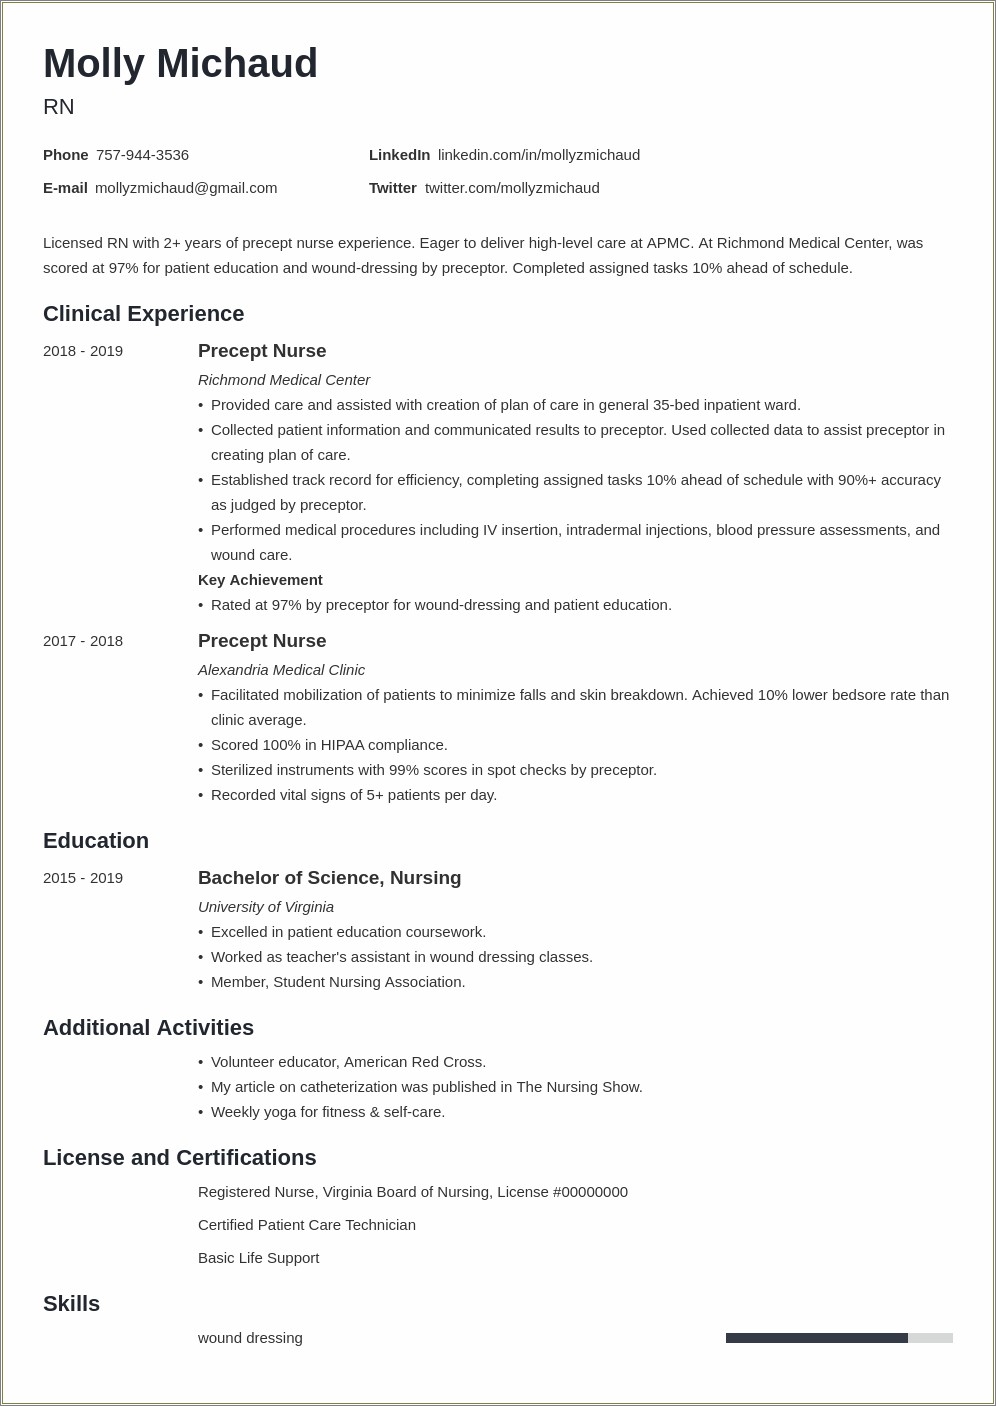 Best Resume Format For Registered Nurse